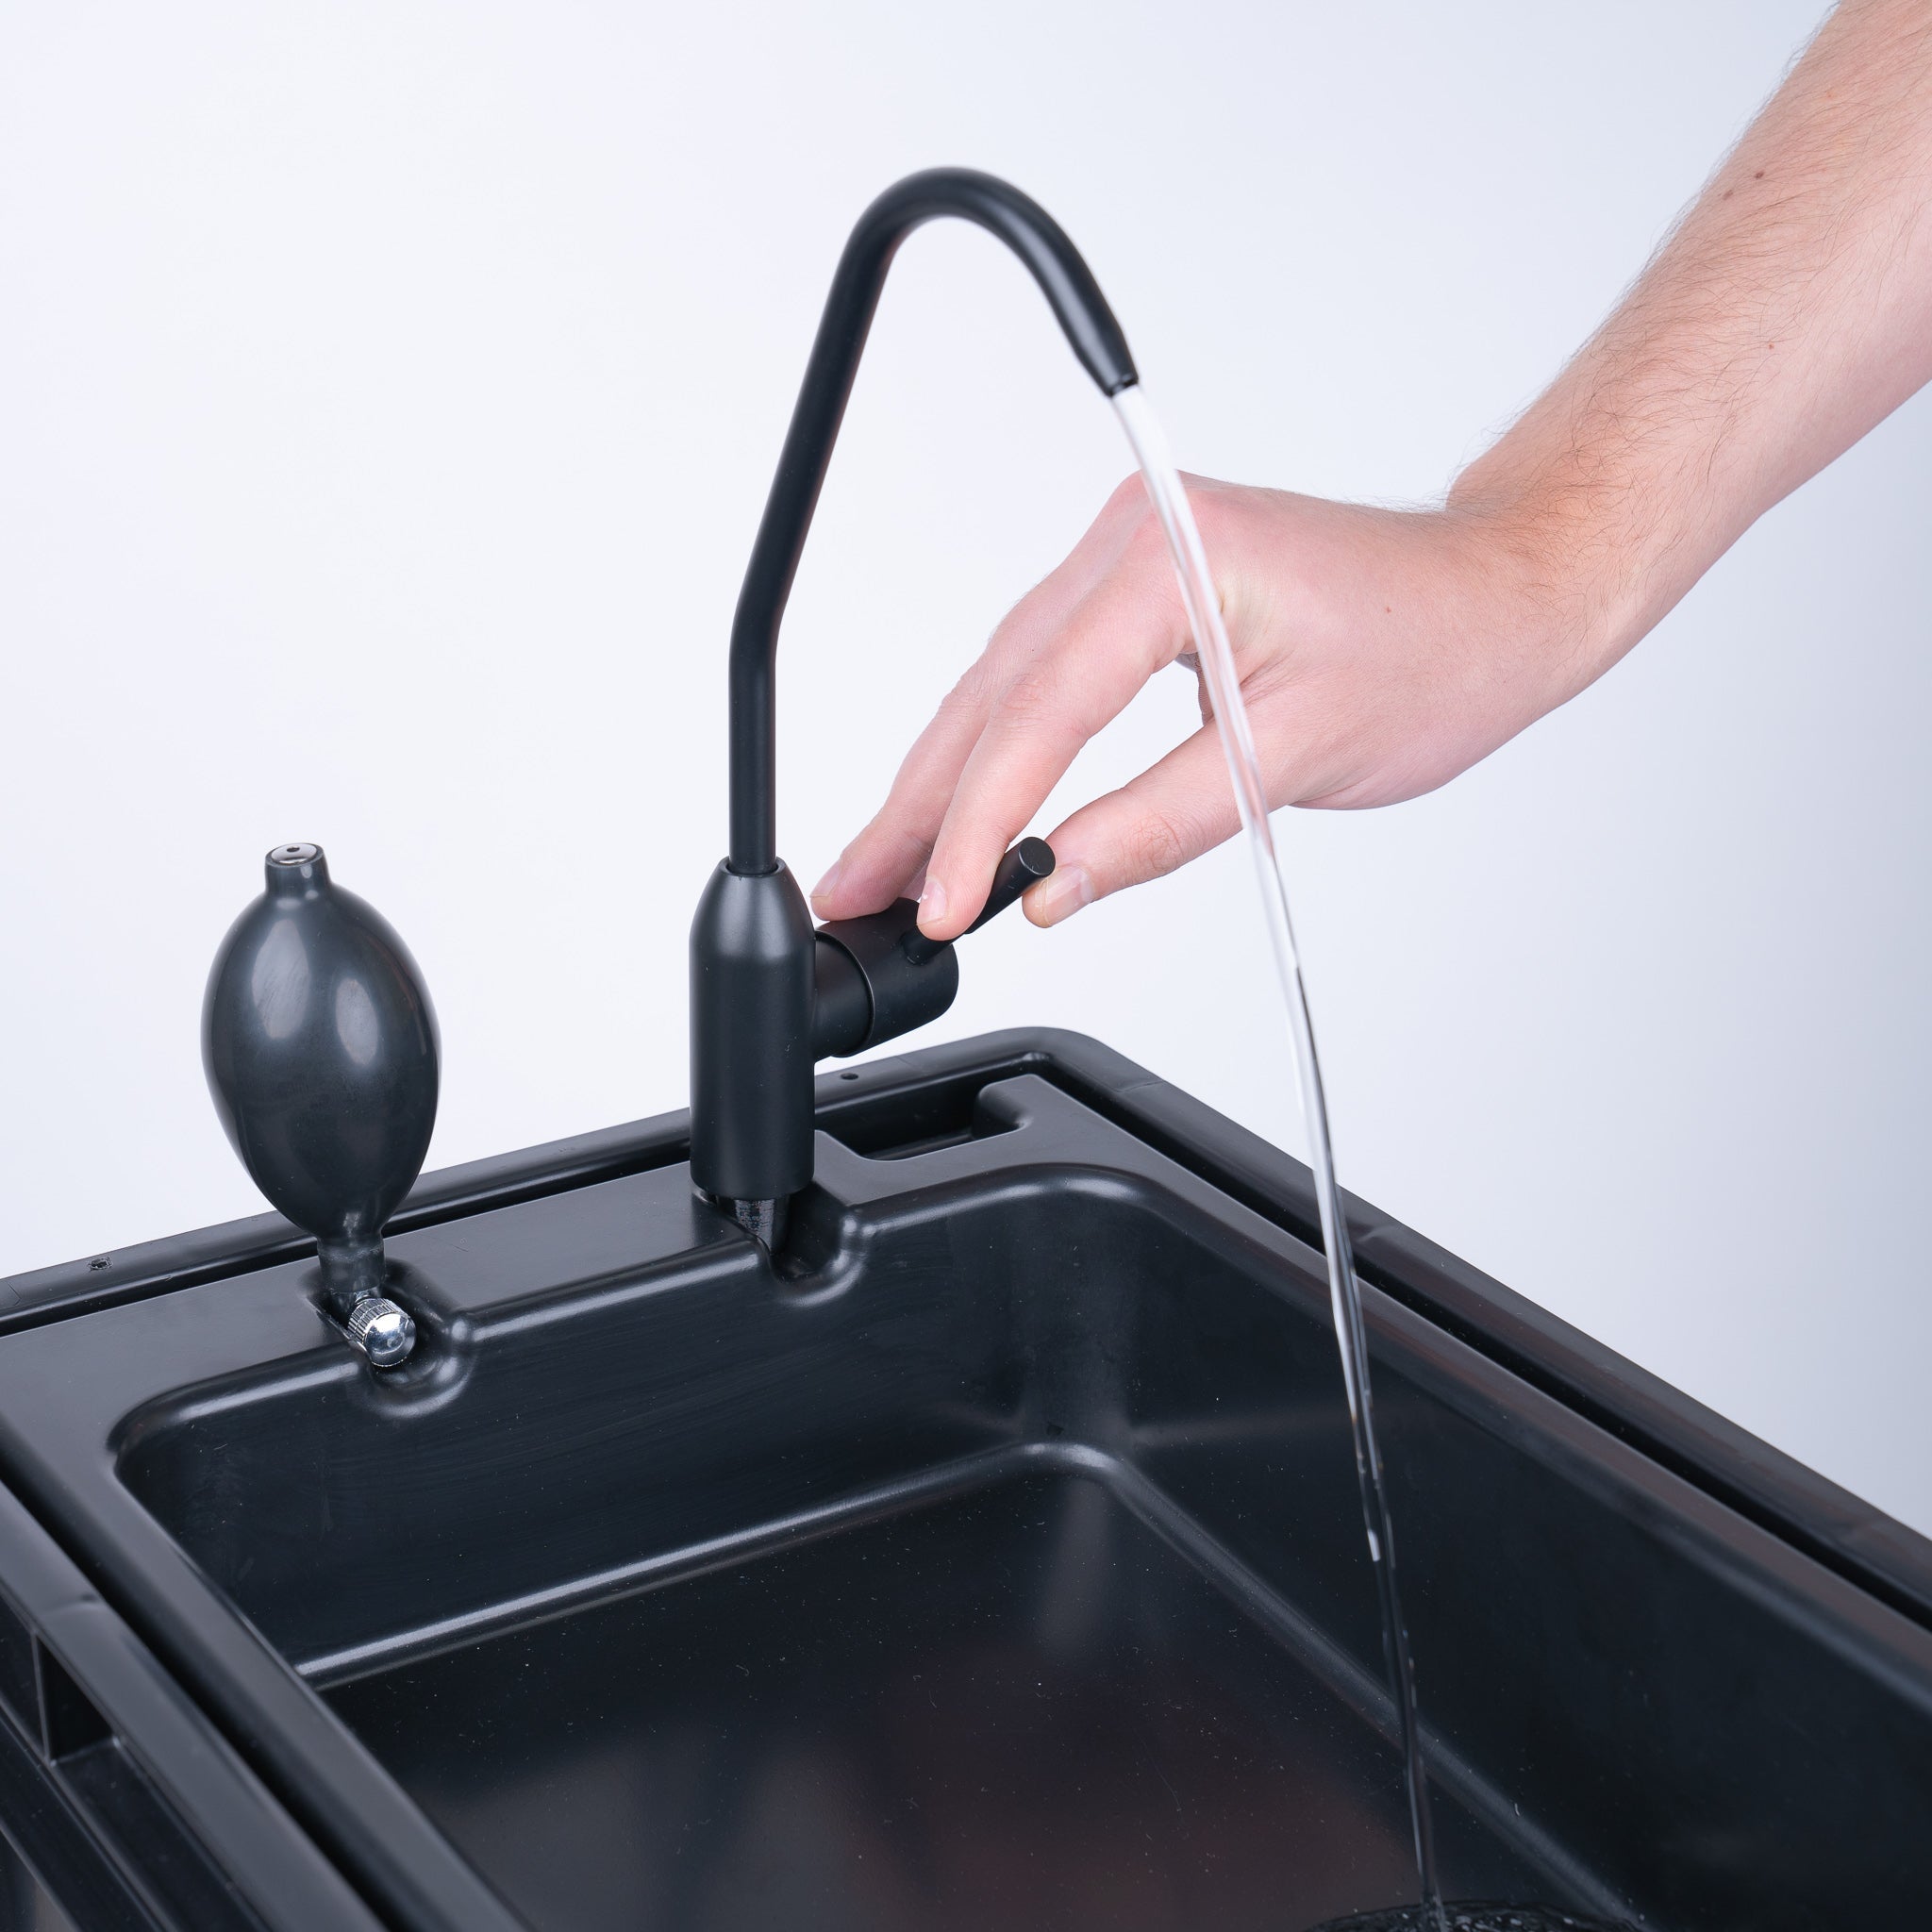 BOXIO - WASH PLUS - Zestaw startowy z umywalką